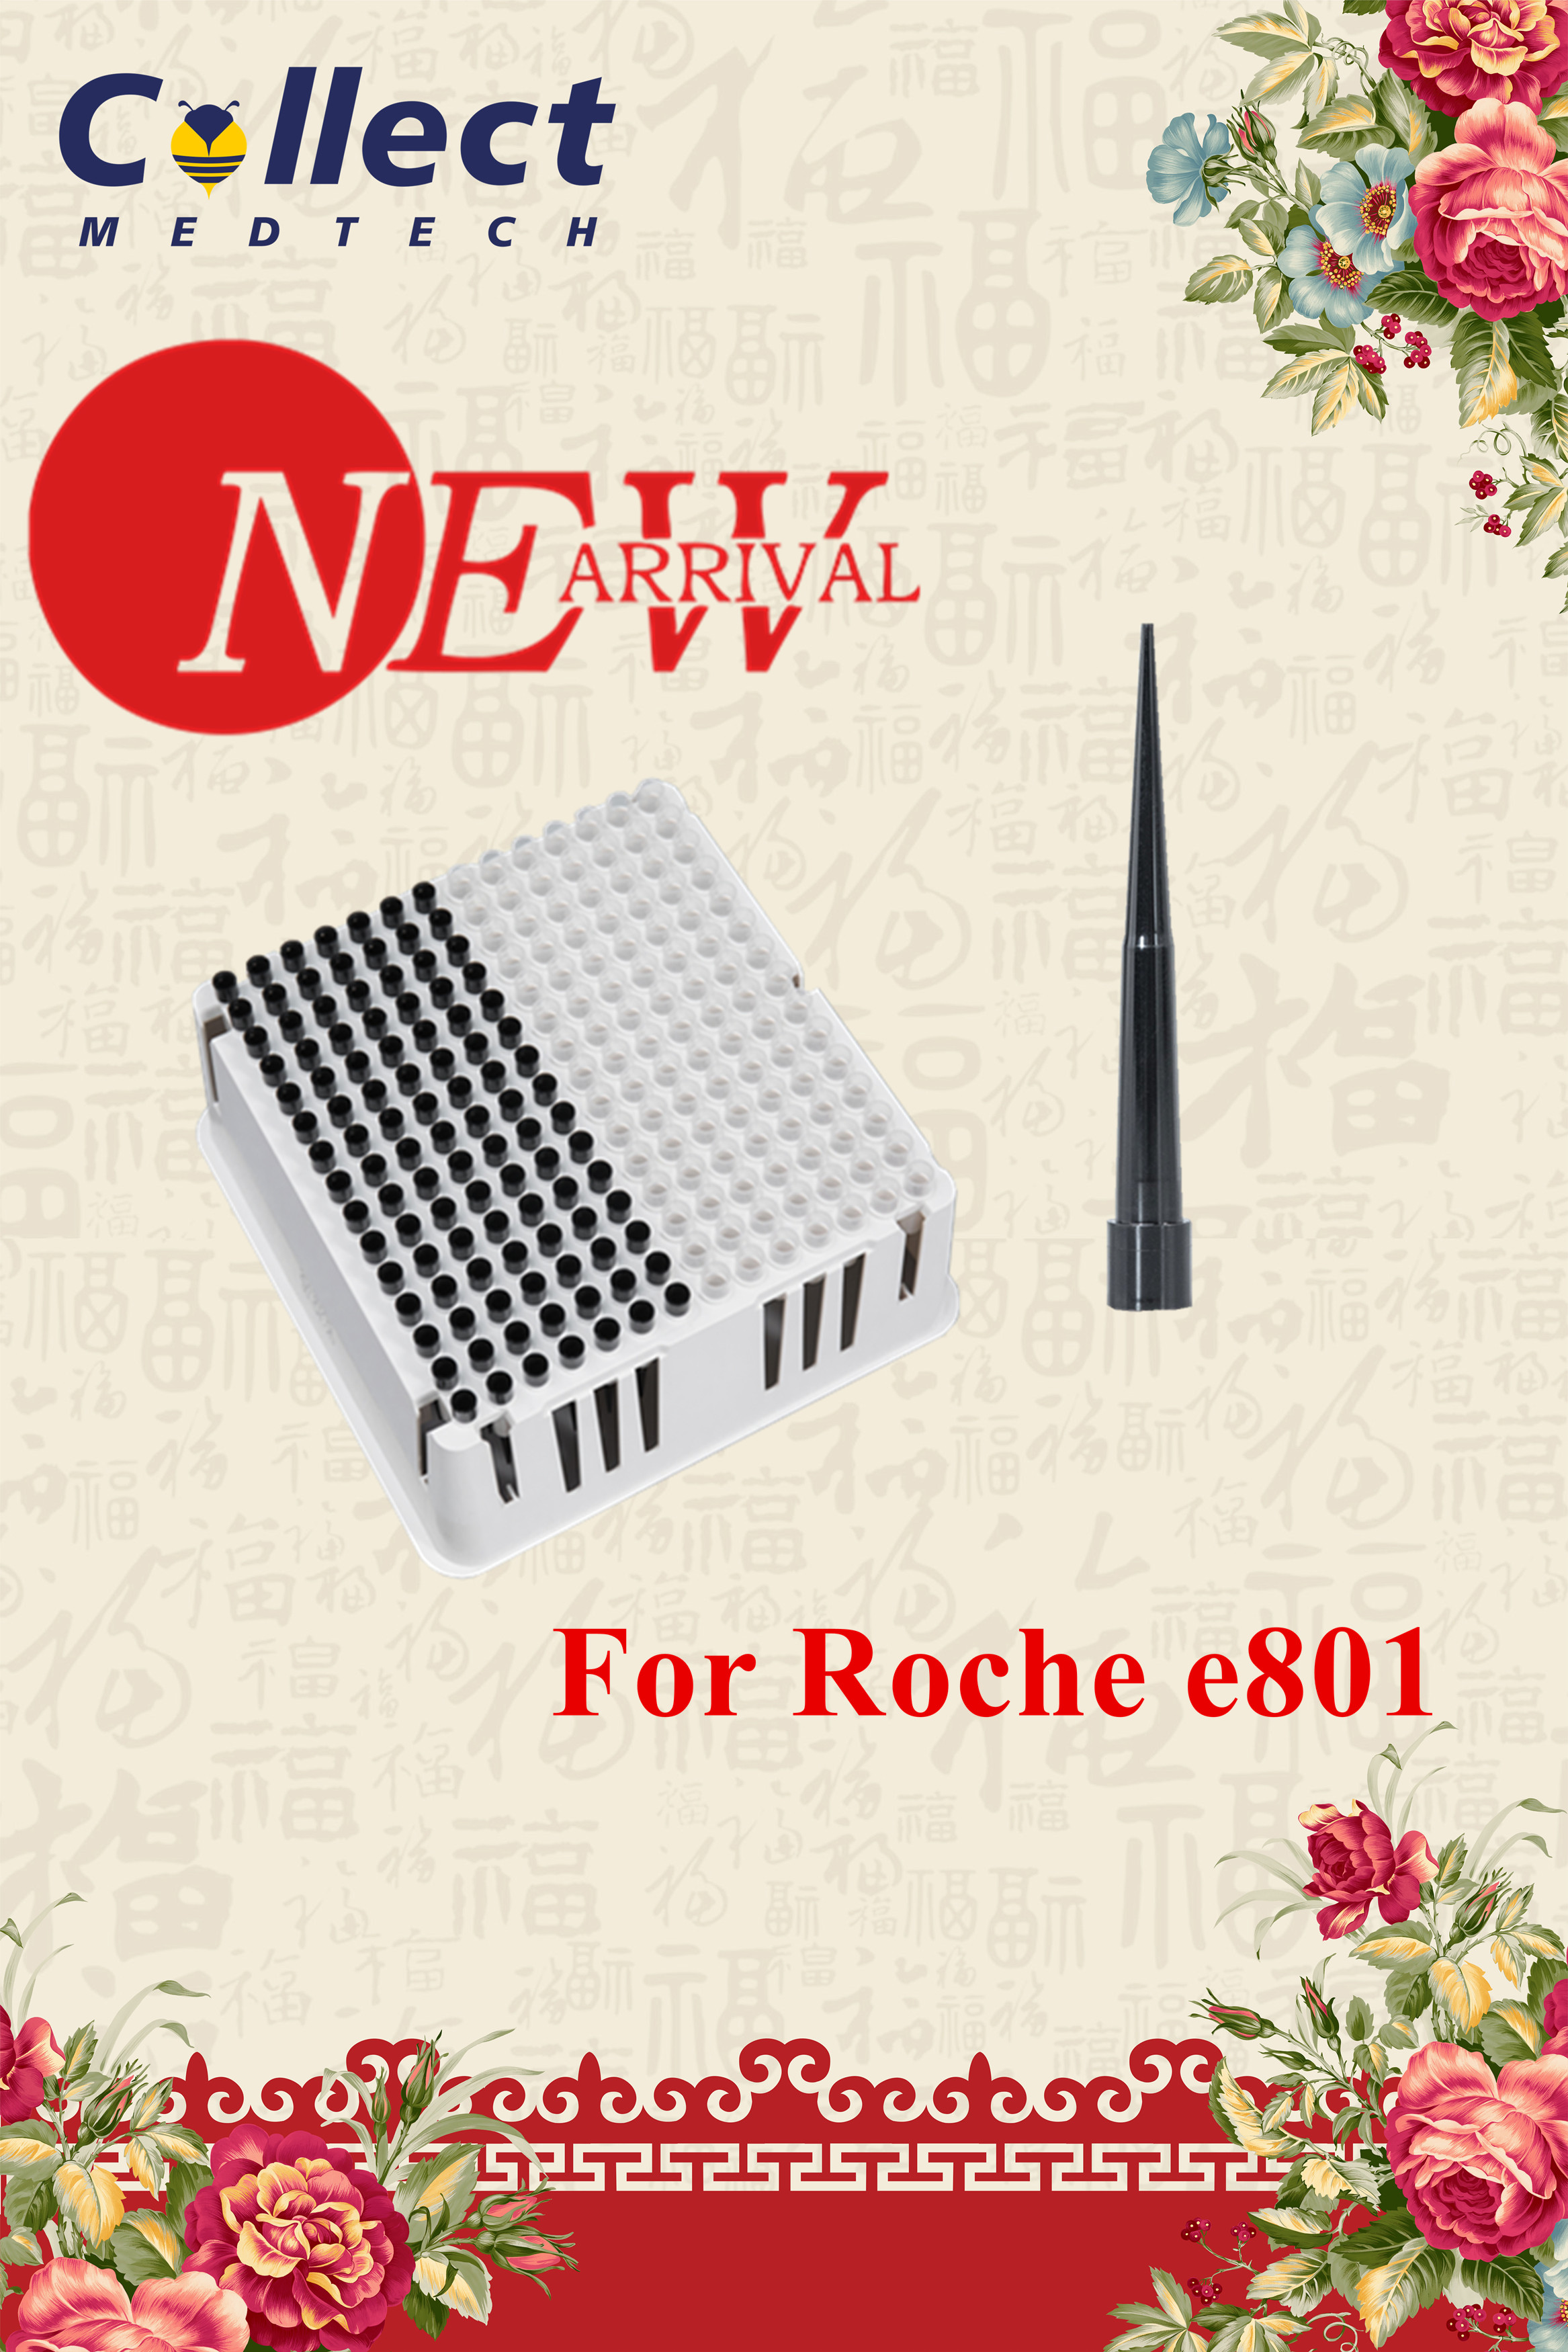 ახალი ჩამოსვლა – რჩევების და თასების უჯრა Roche e801-ისთვის